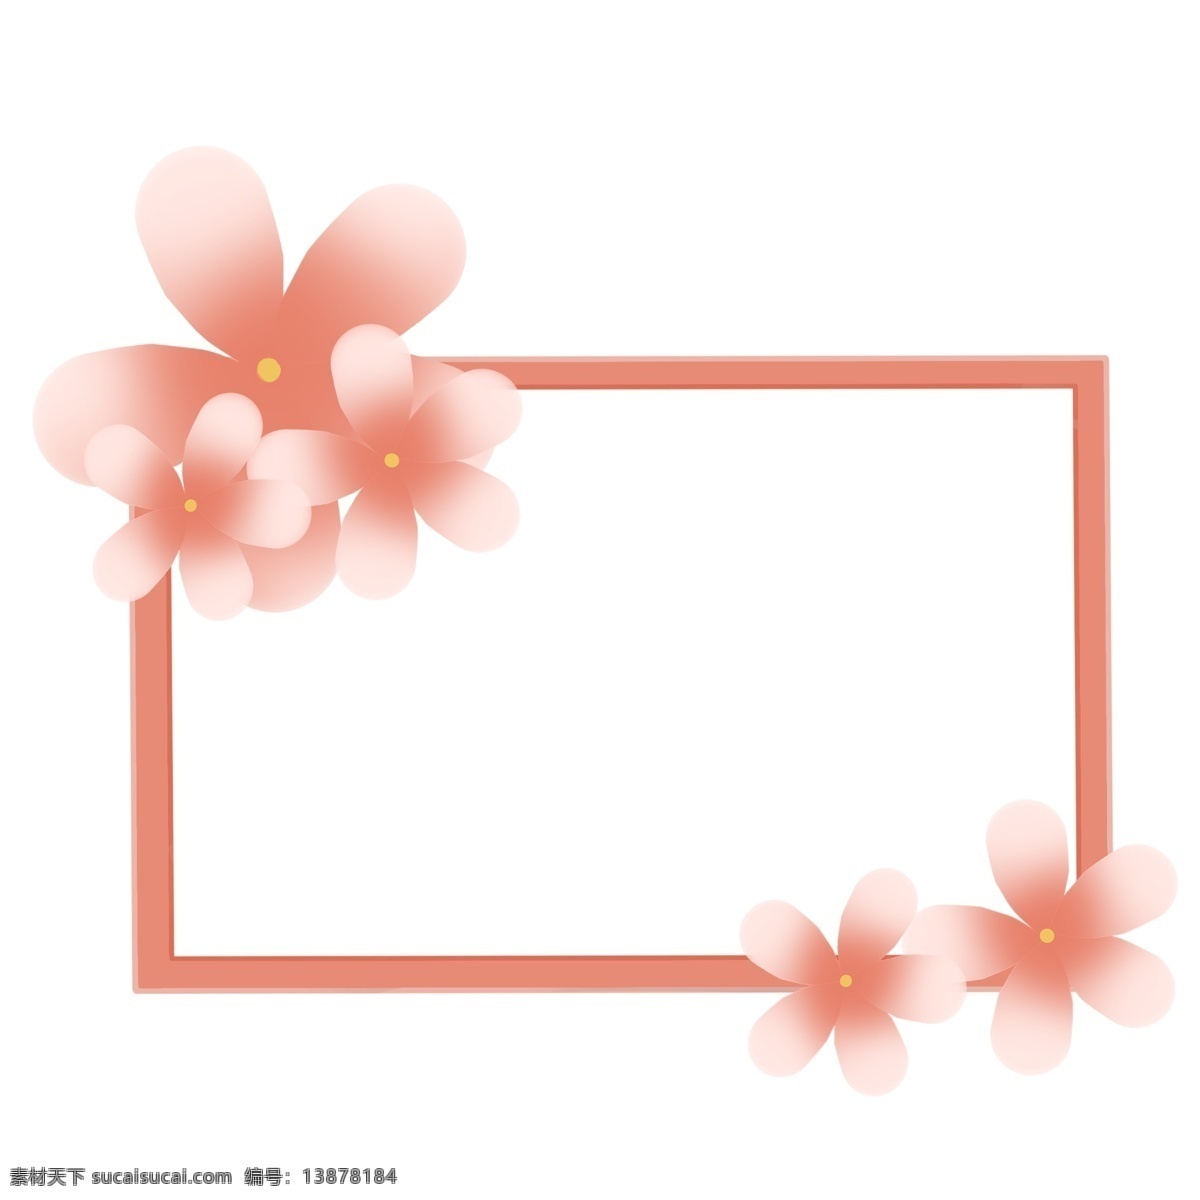 春季 粉色 边框 插画 春季边框 粉色边框 卡通边框 边框装饰 粉色花朵 花卉 唯美边框 春天边框